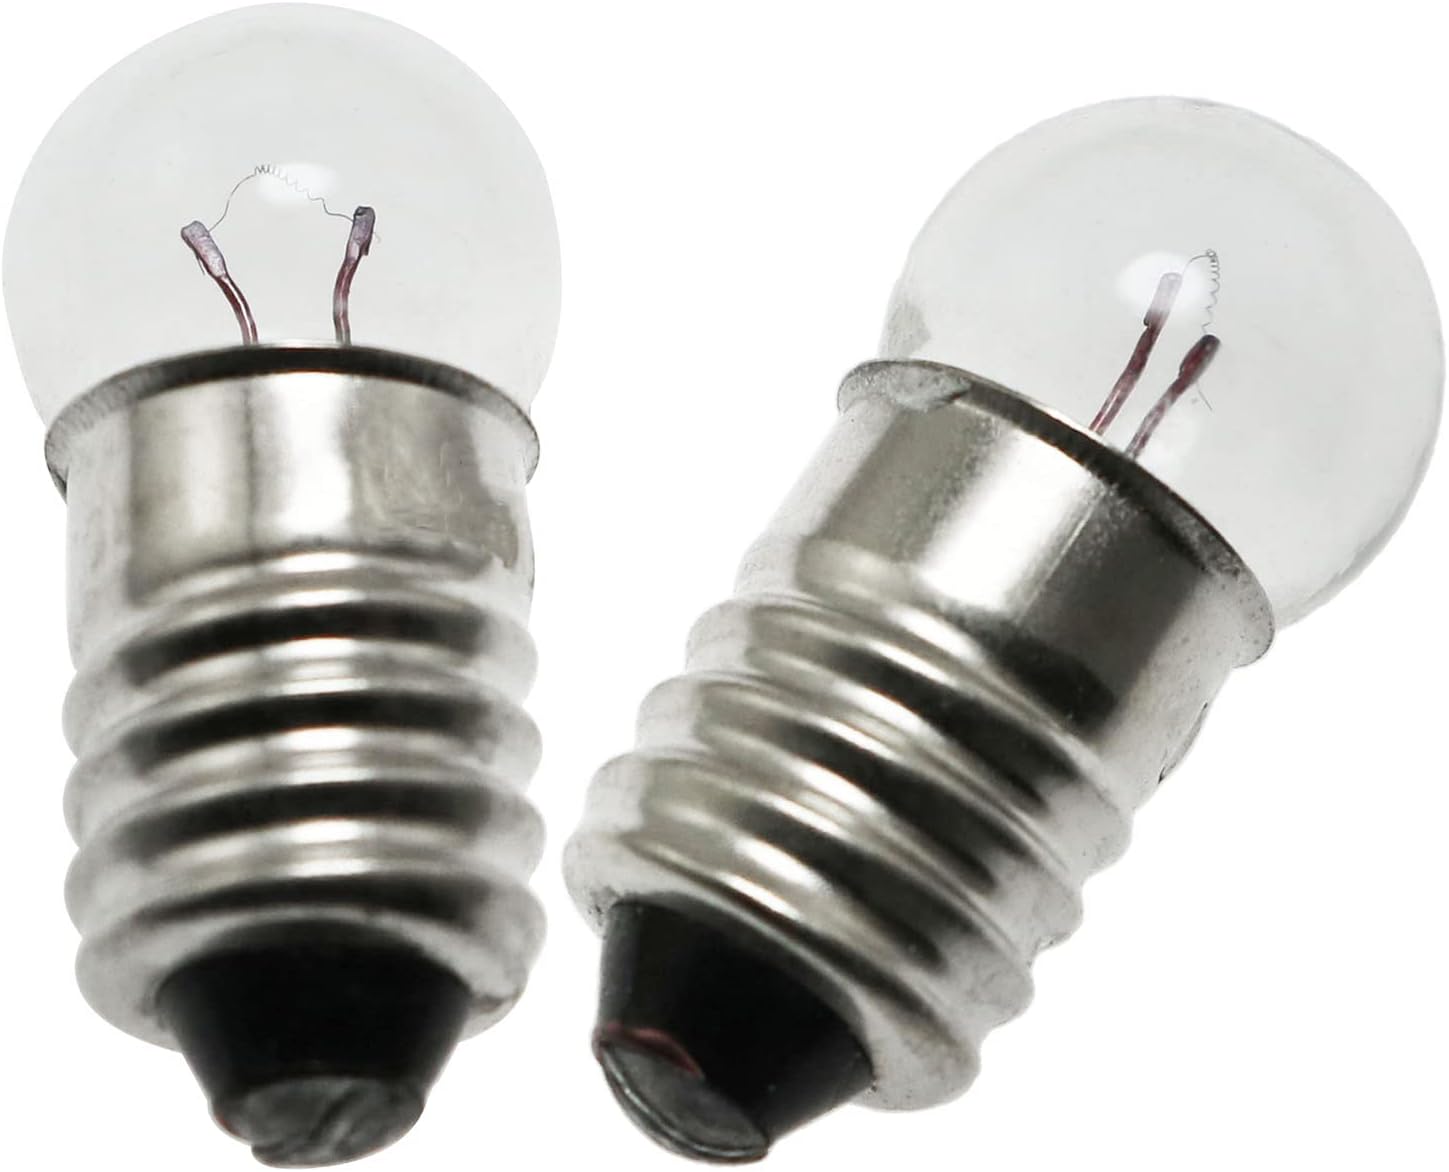 Mini Light Bulb Kit SQXBK 10PCS E10 1.5V/0.3A Miniature Screw Base Light Bulbs and 10PCS E10 Golden Light Socket Bulbs Lamps Base Holders for Home Experiment Circuit Electrical Test Accessories